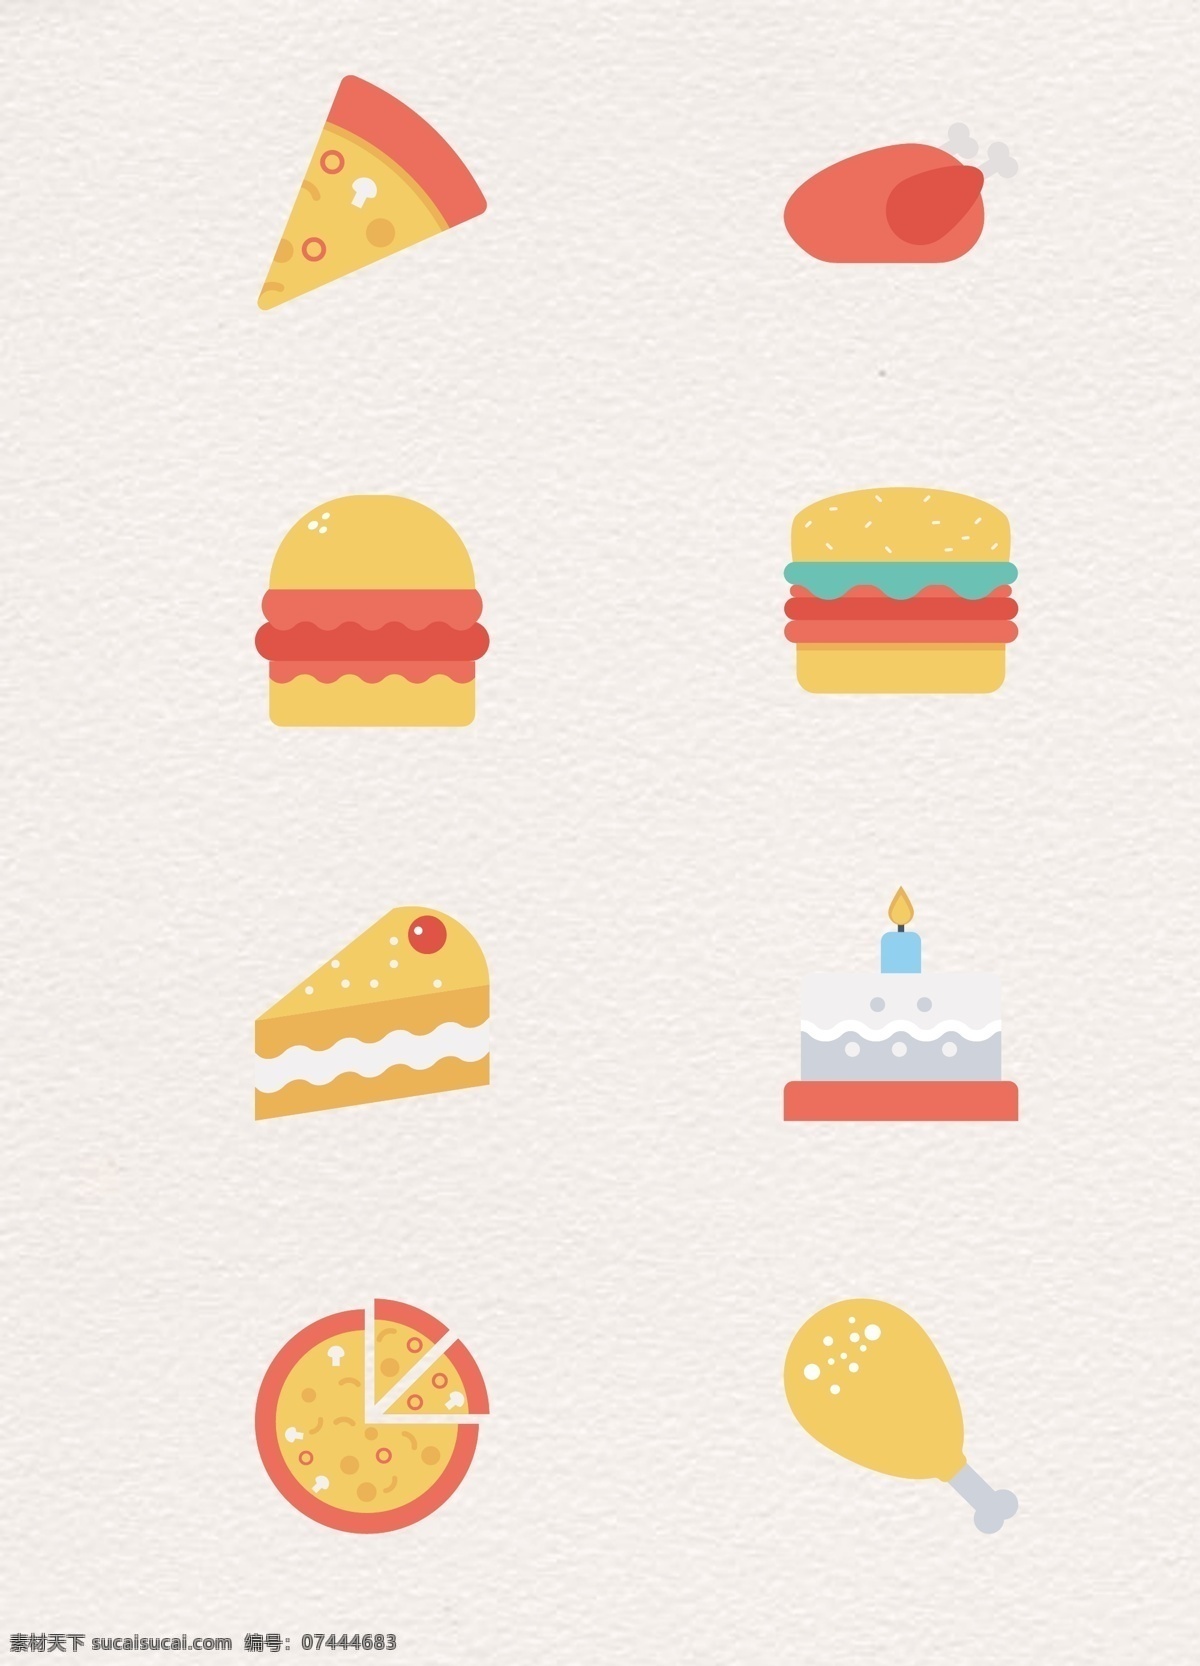 矢量 简约 快餐 甜点 卡通 披萨 蛋糕 生日蛋糕 汉堡 鸡腿 图标设计 扁平化设计